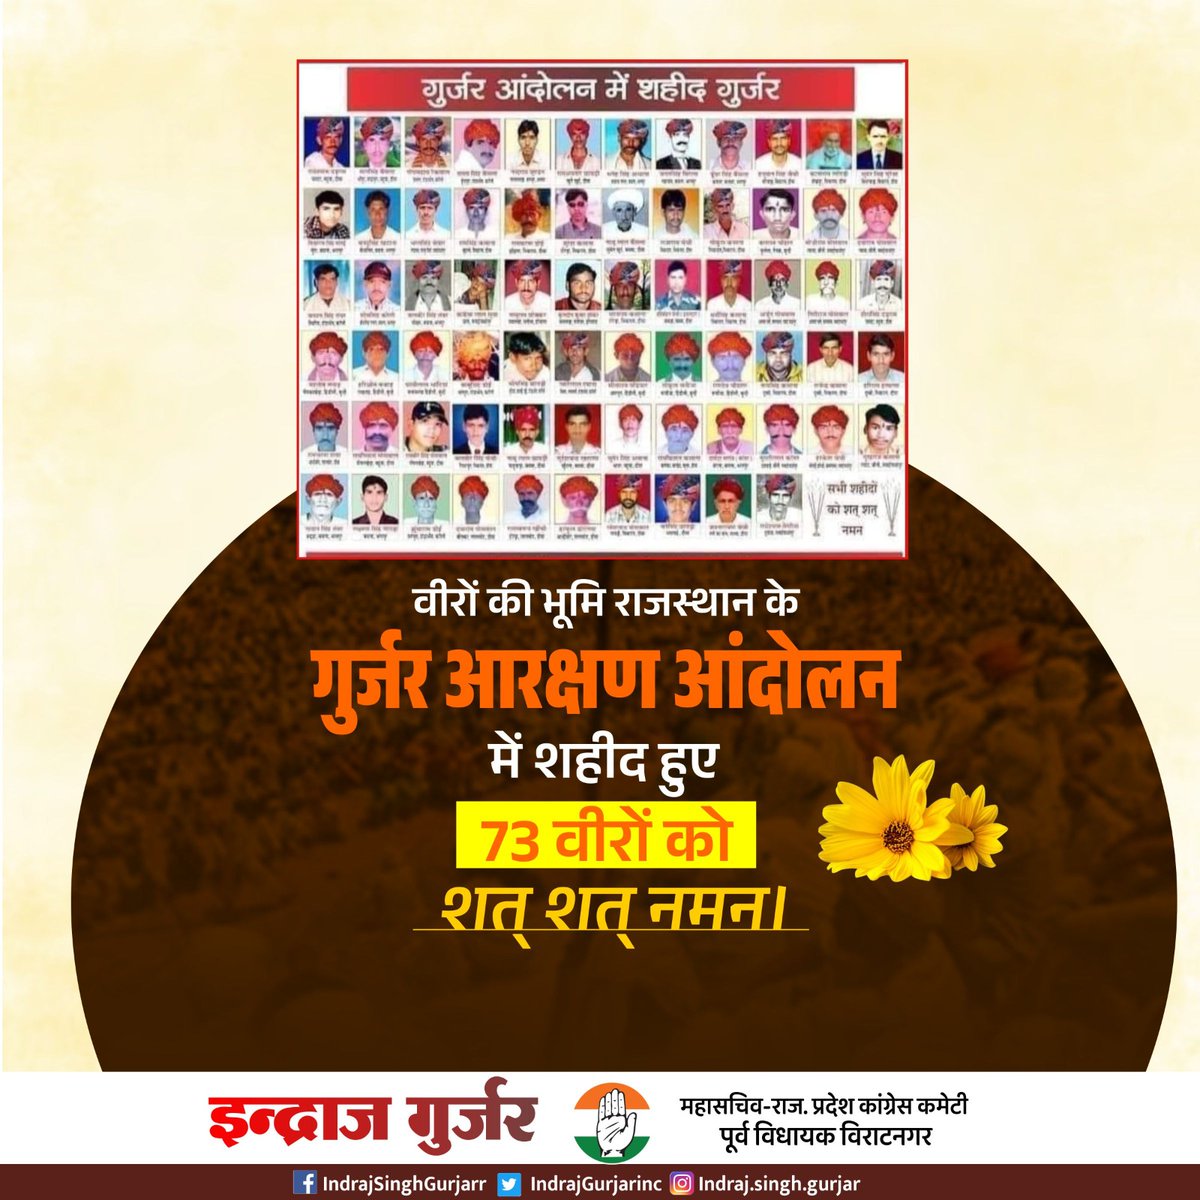 वीरभूमि राजस्थान के गुर्जर आरक्षण आंदोलन में समाज के शहीद हुए 73 वीर गुर्जर सपूतों के बलिदान दिवस पर उन सभी अमर शहीदों को मेरा कोटि-कोटि नमन।